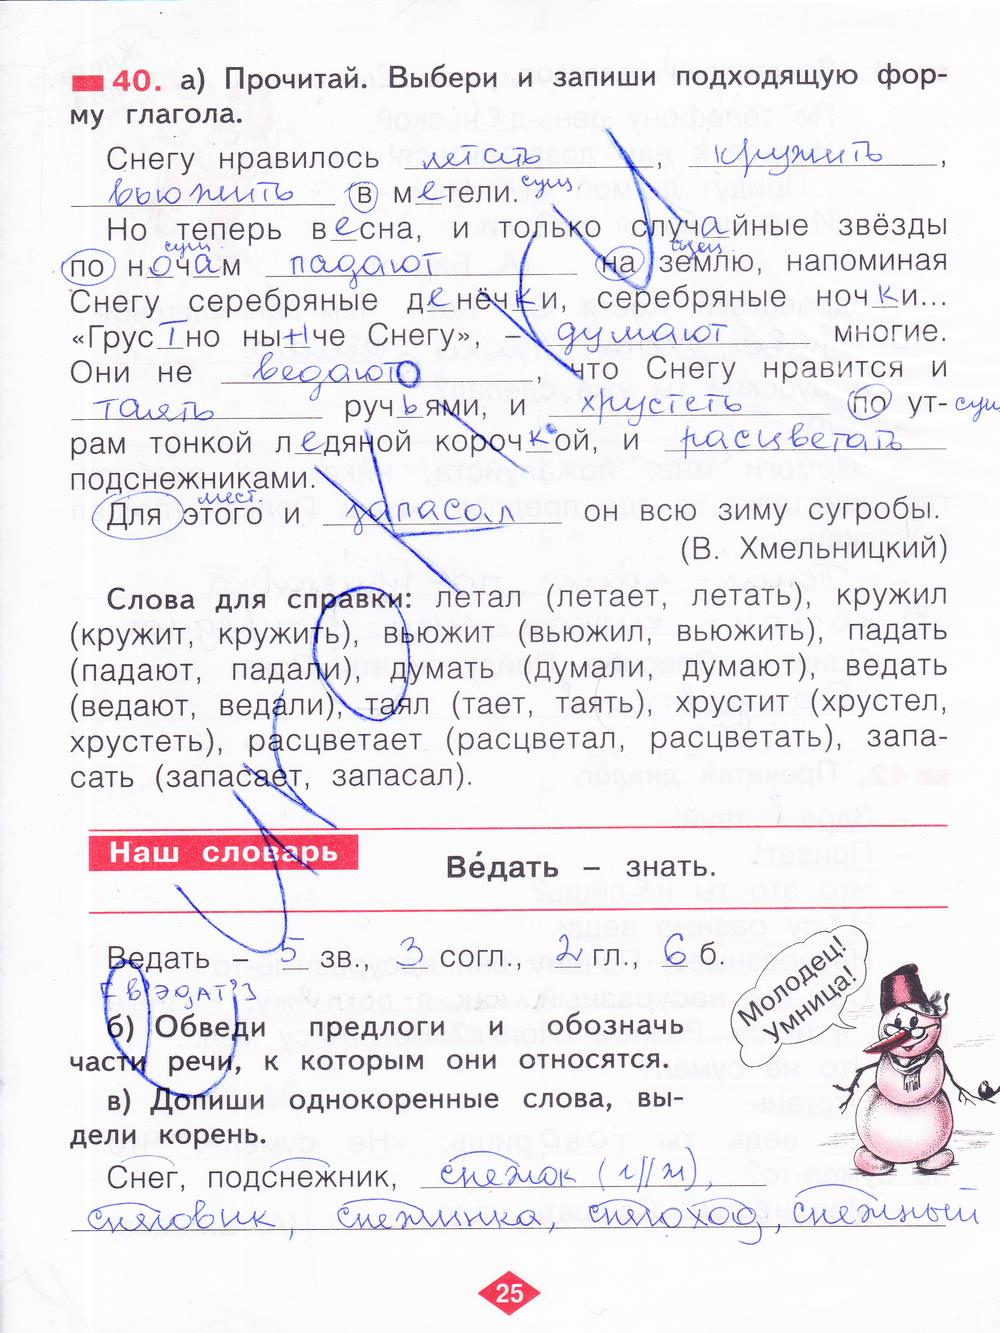 гдз 2 класс рабочая тетрадь часть 3 страница 25 русский язык Яковлева